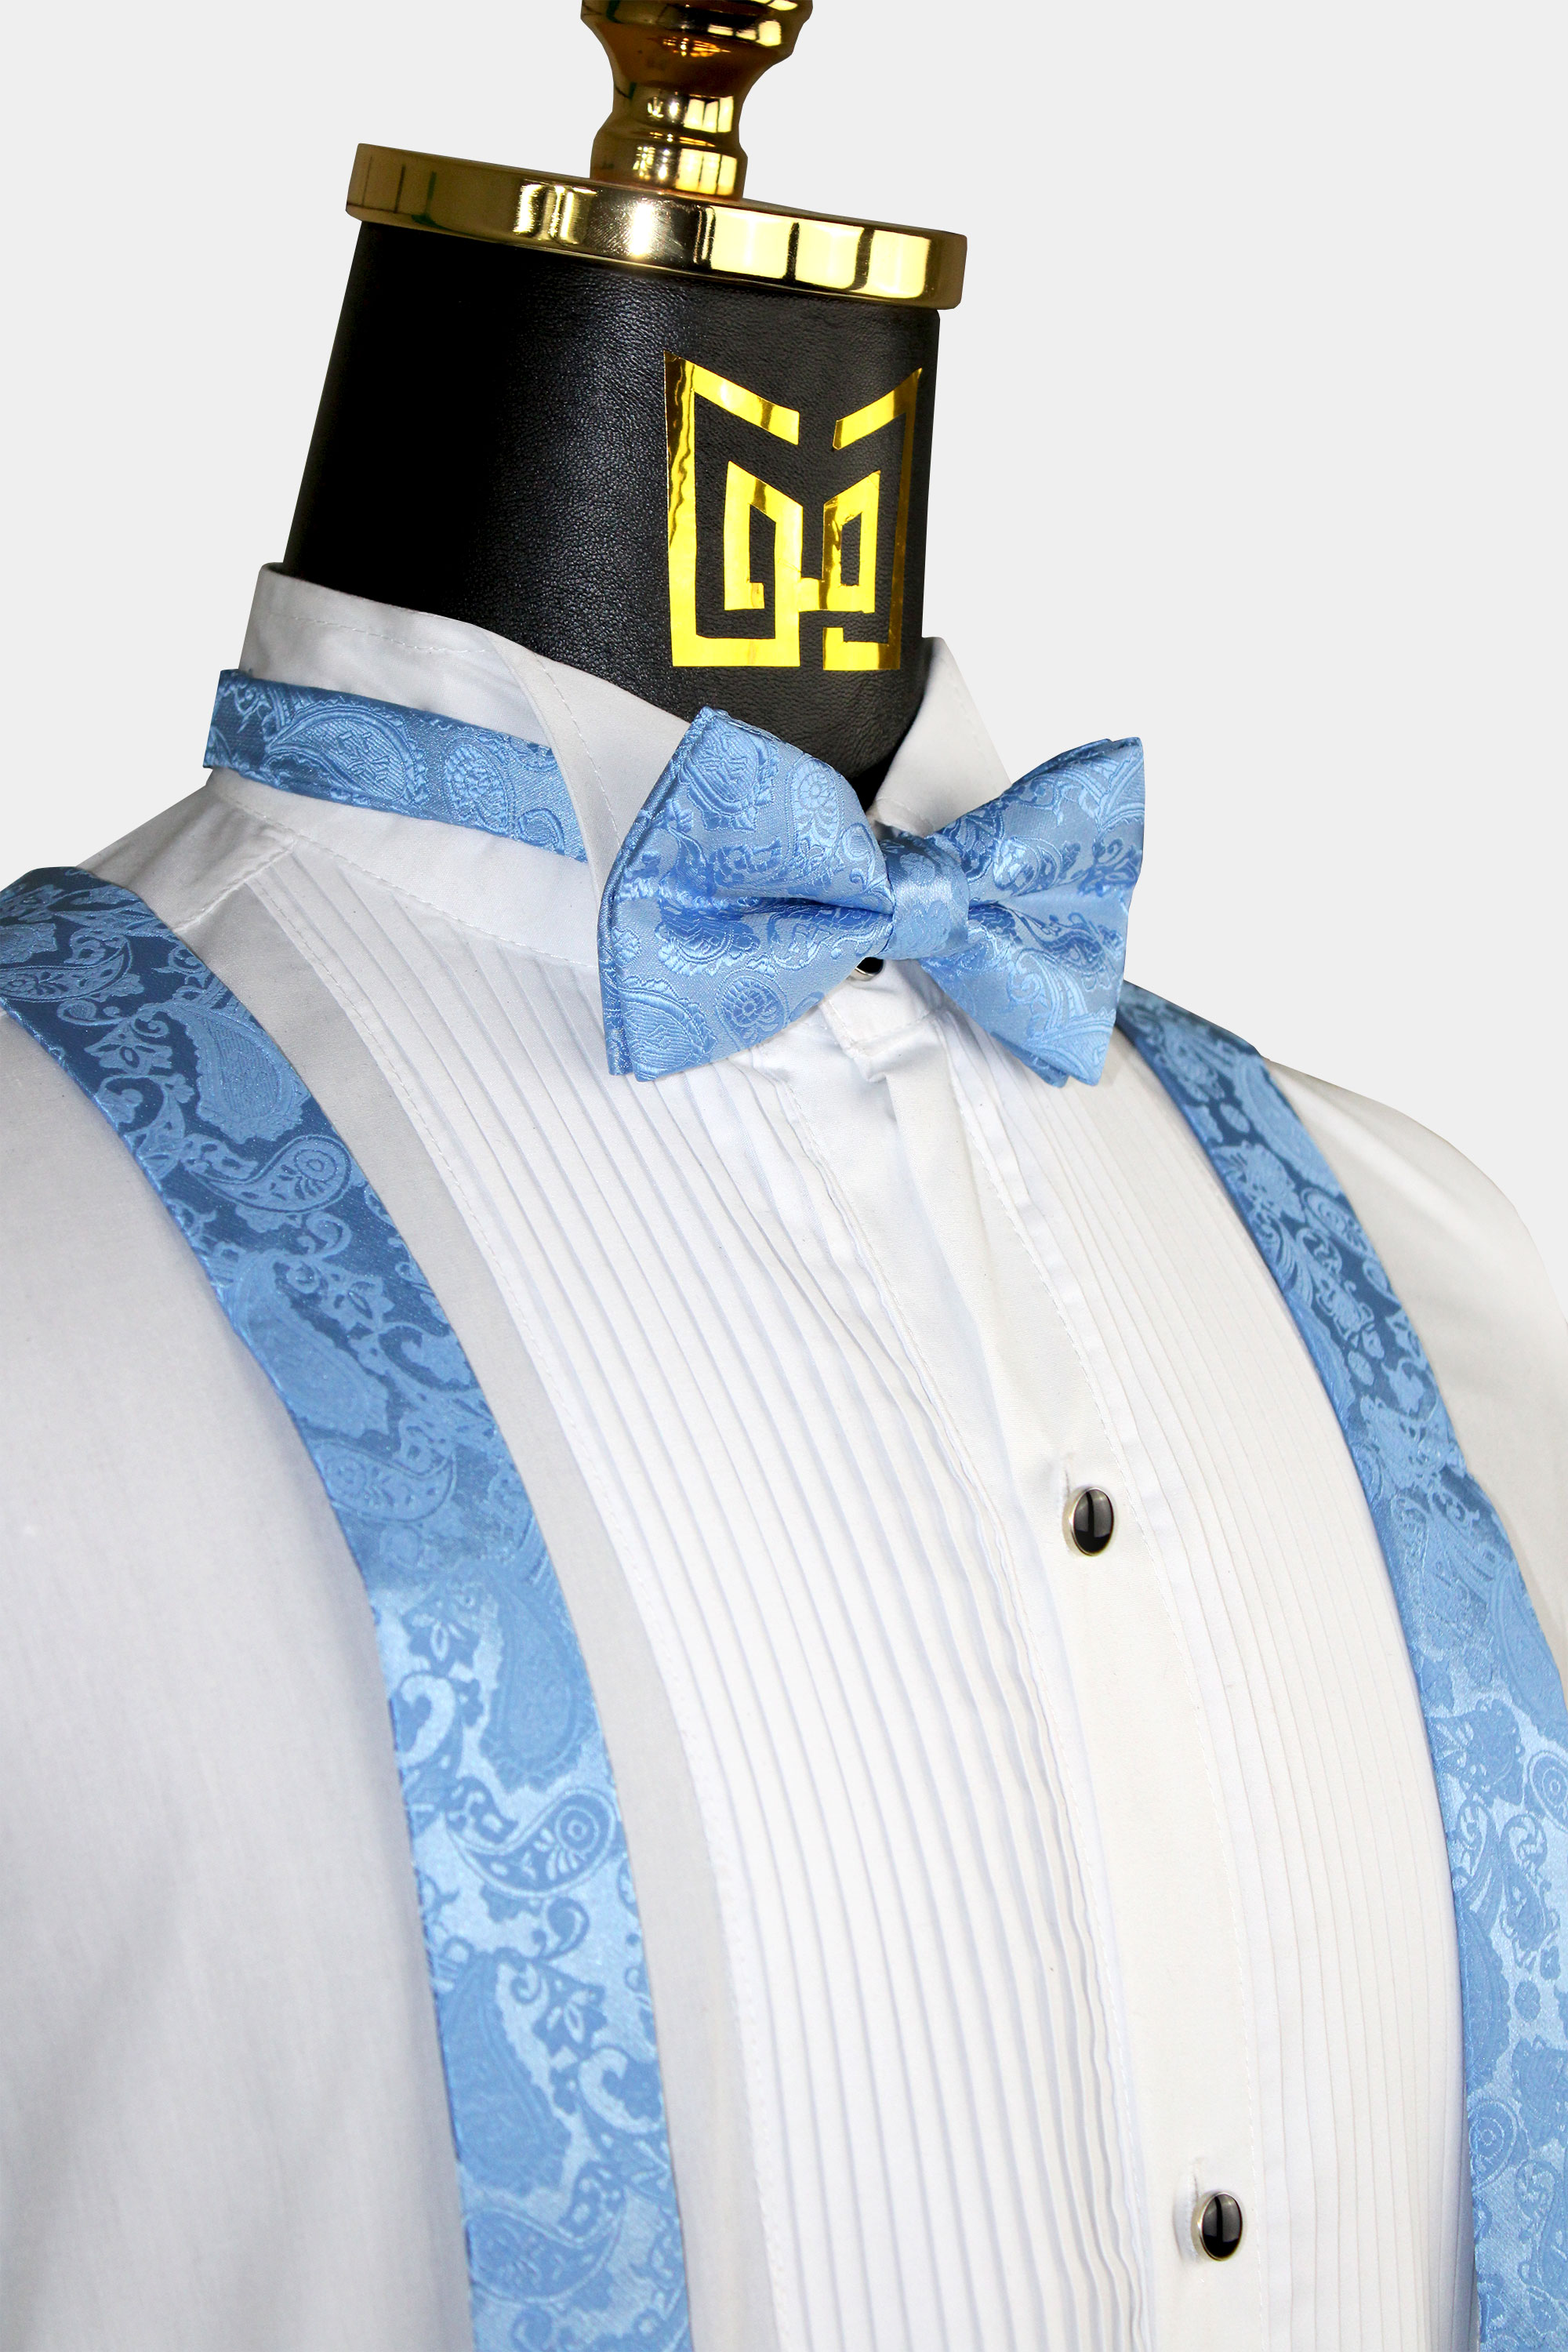 Sky-Blue-Suspenders-and-Bow-Tie-Set-For-Groomsmen-Wedding-from-Gentlemansguru.Com